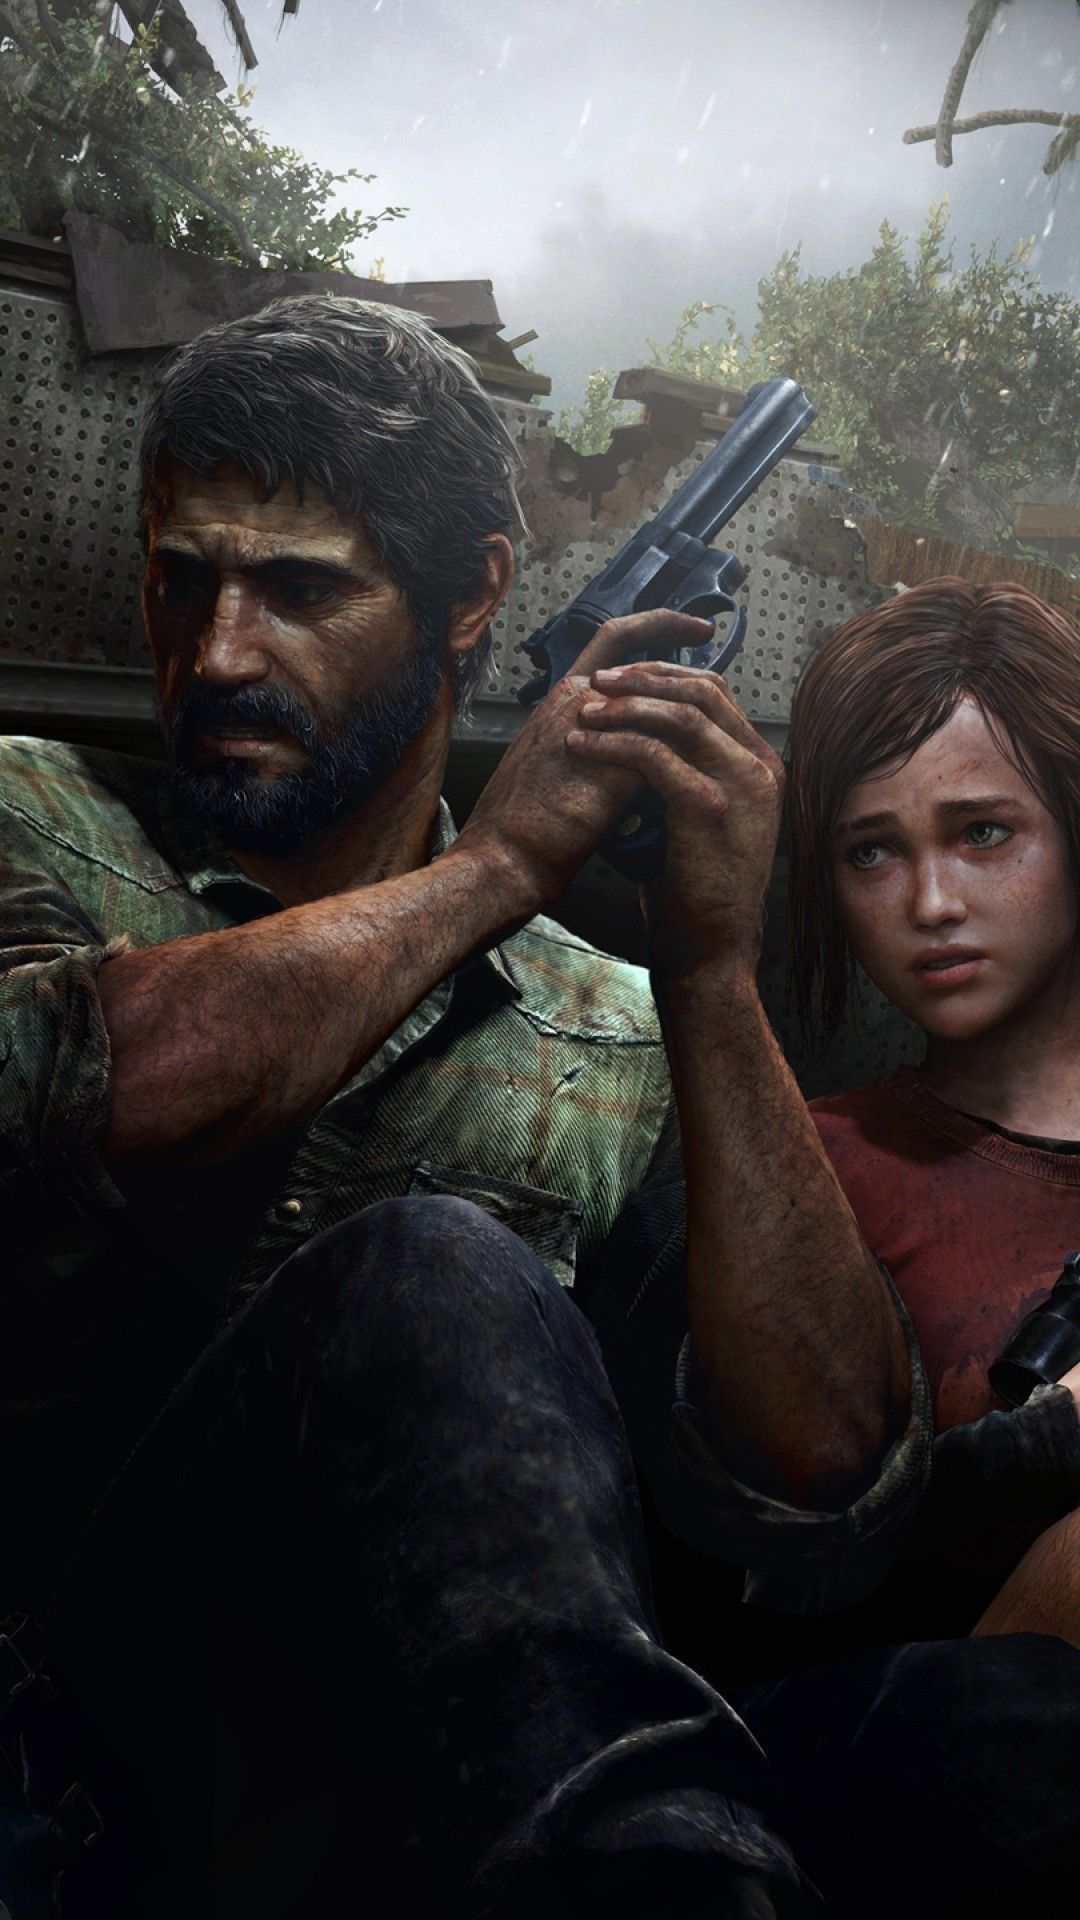  The Last Of Us Hintergrundbild 1080x1920. The Last Of Us iPhone Wallpaper The Last Of Us iPhone Wallpaper